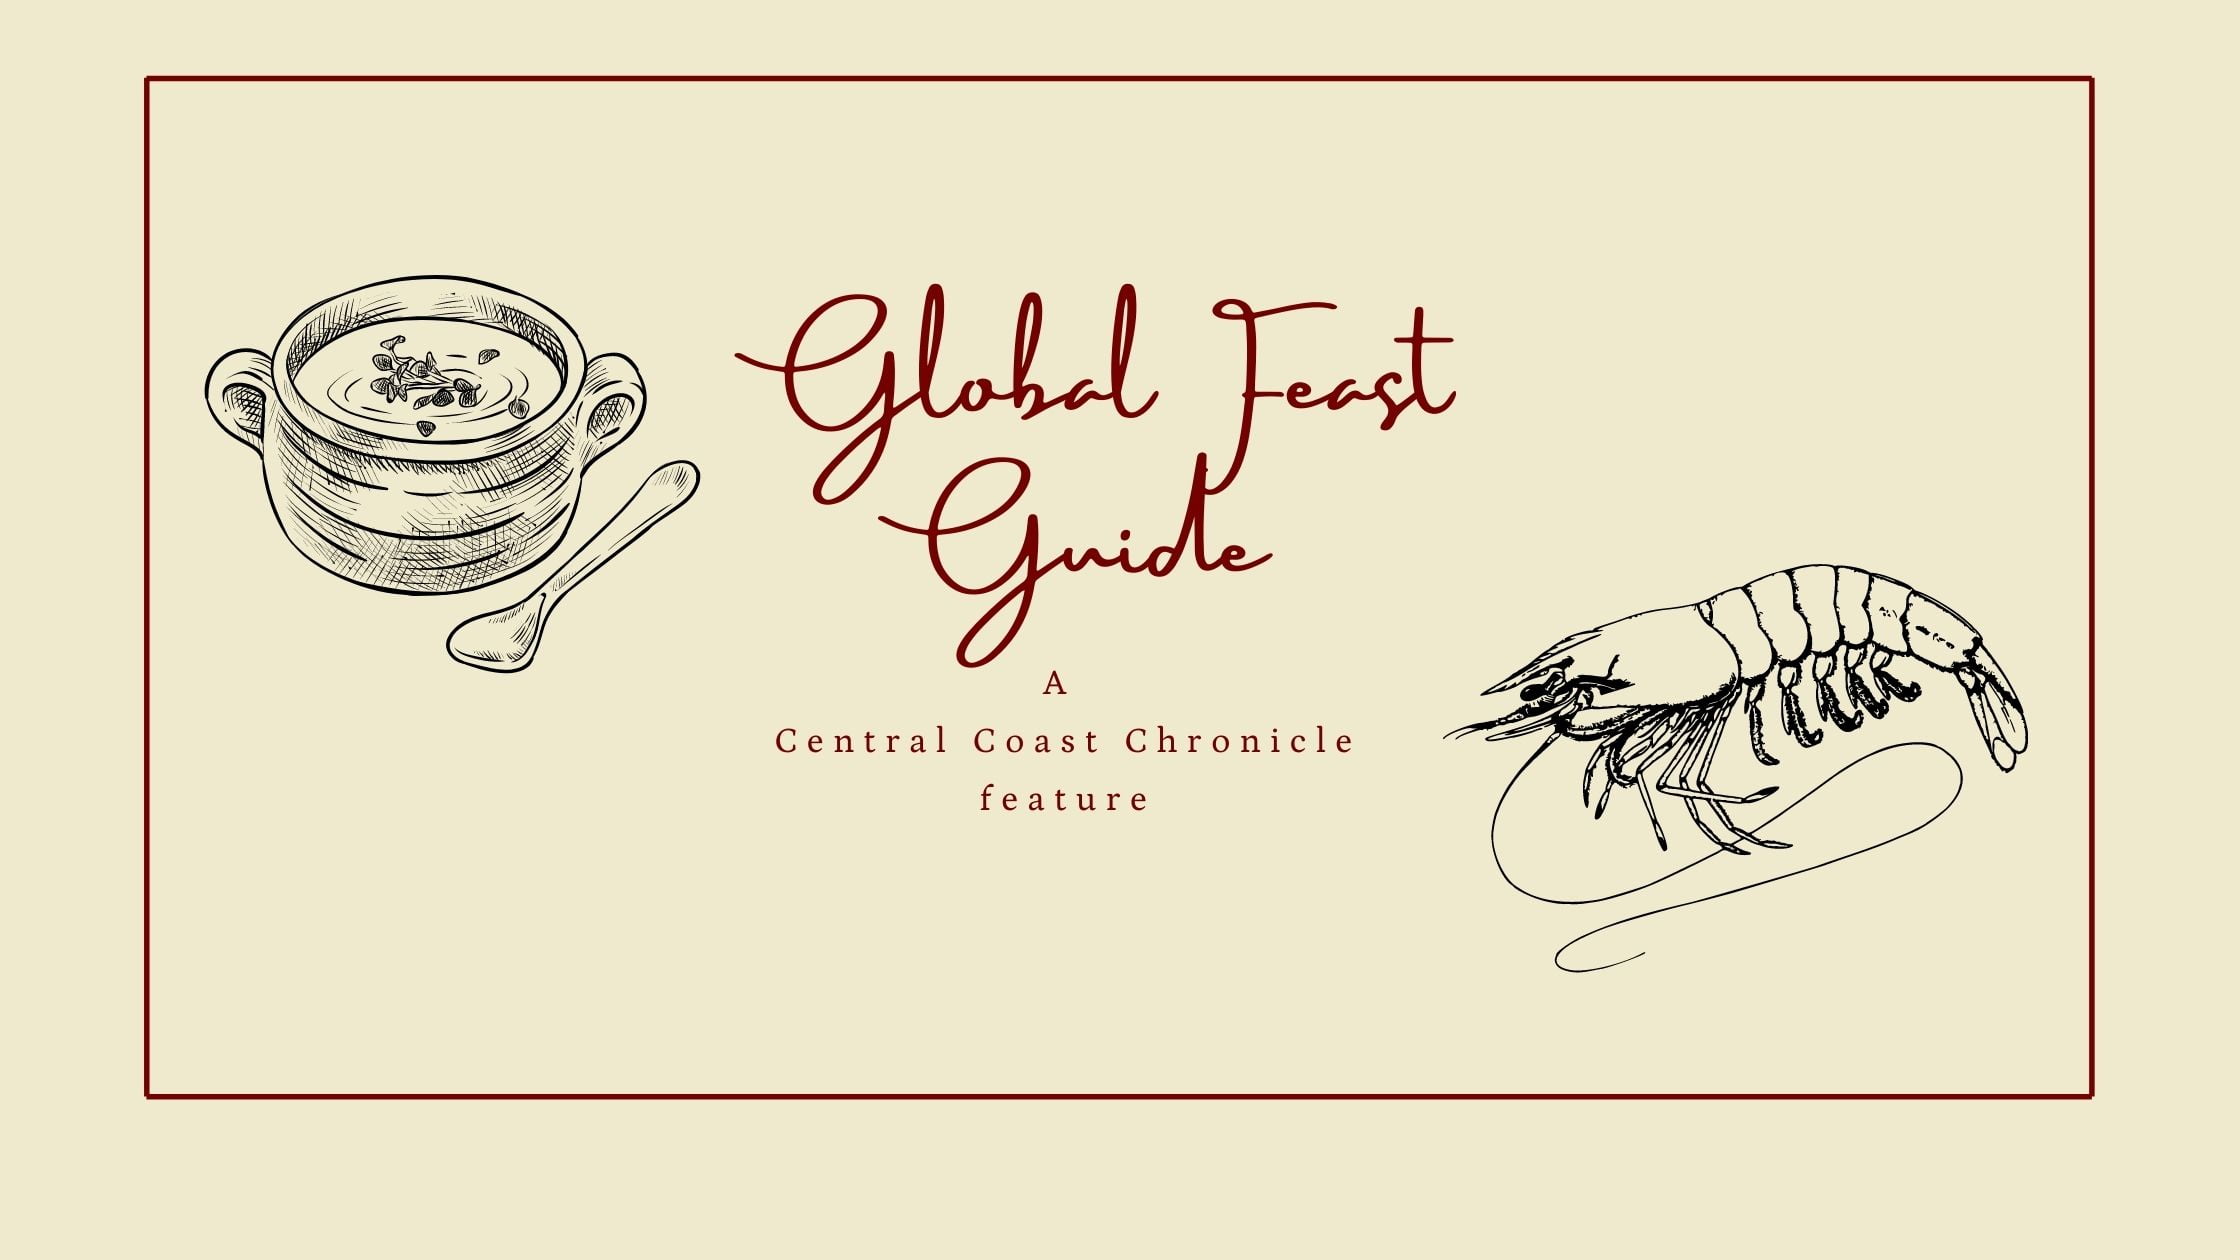 Global Feast Guide